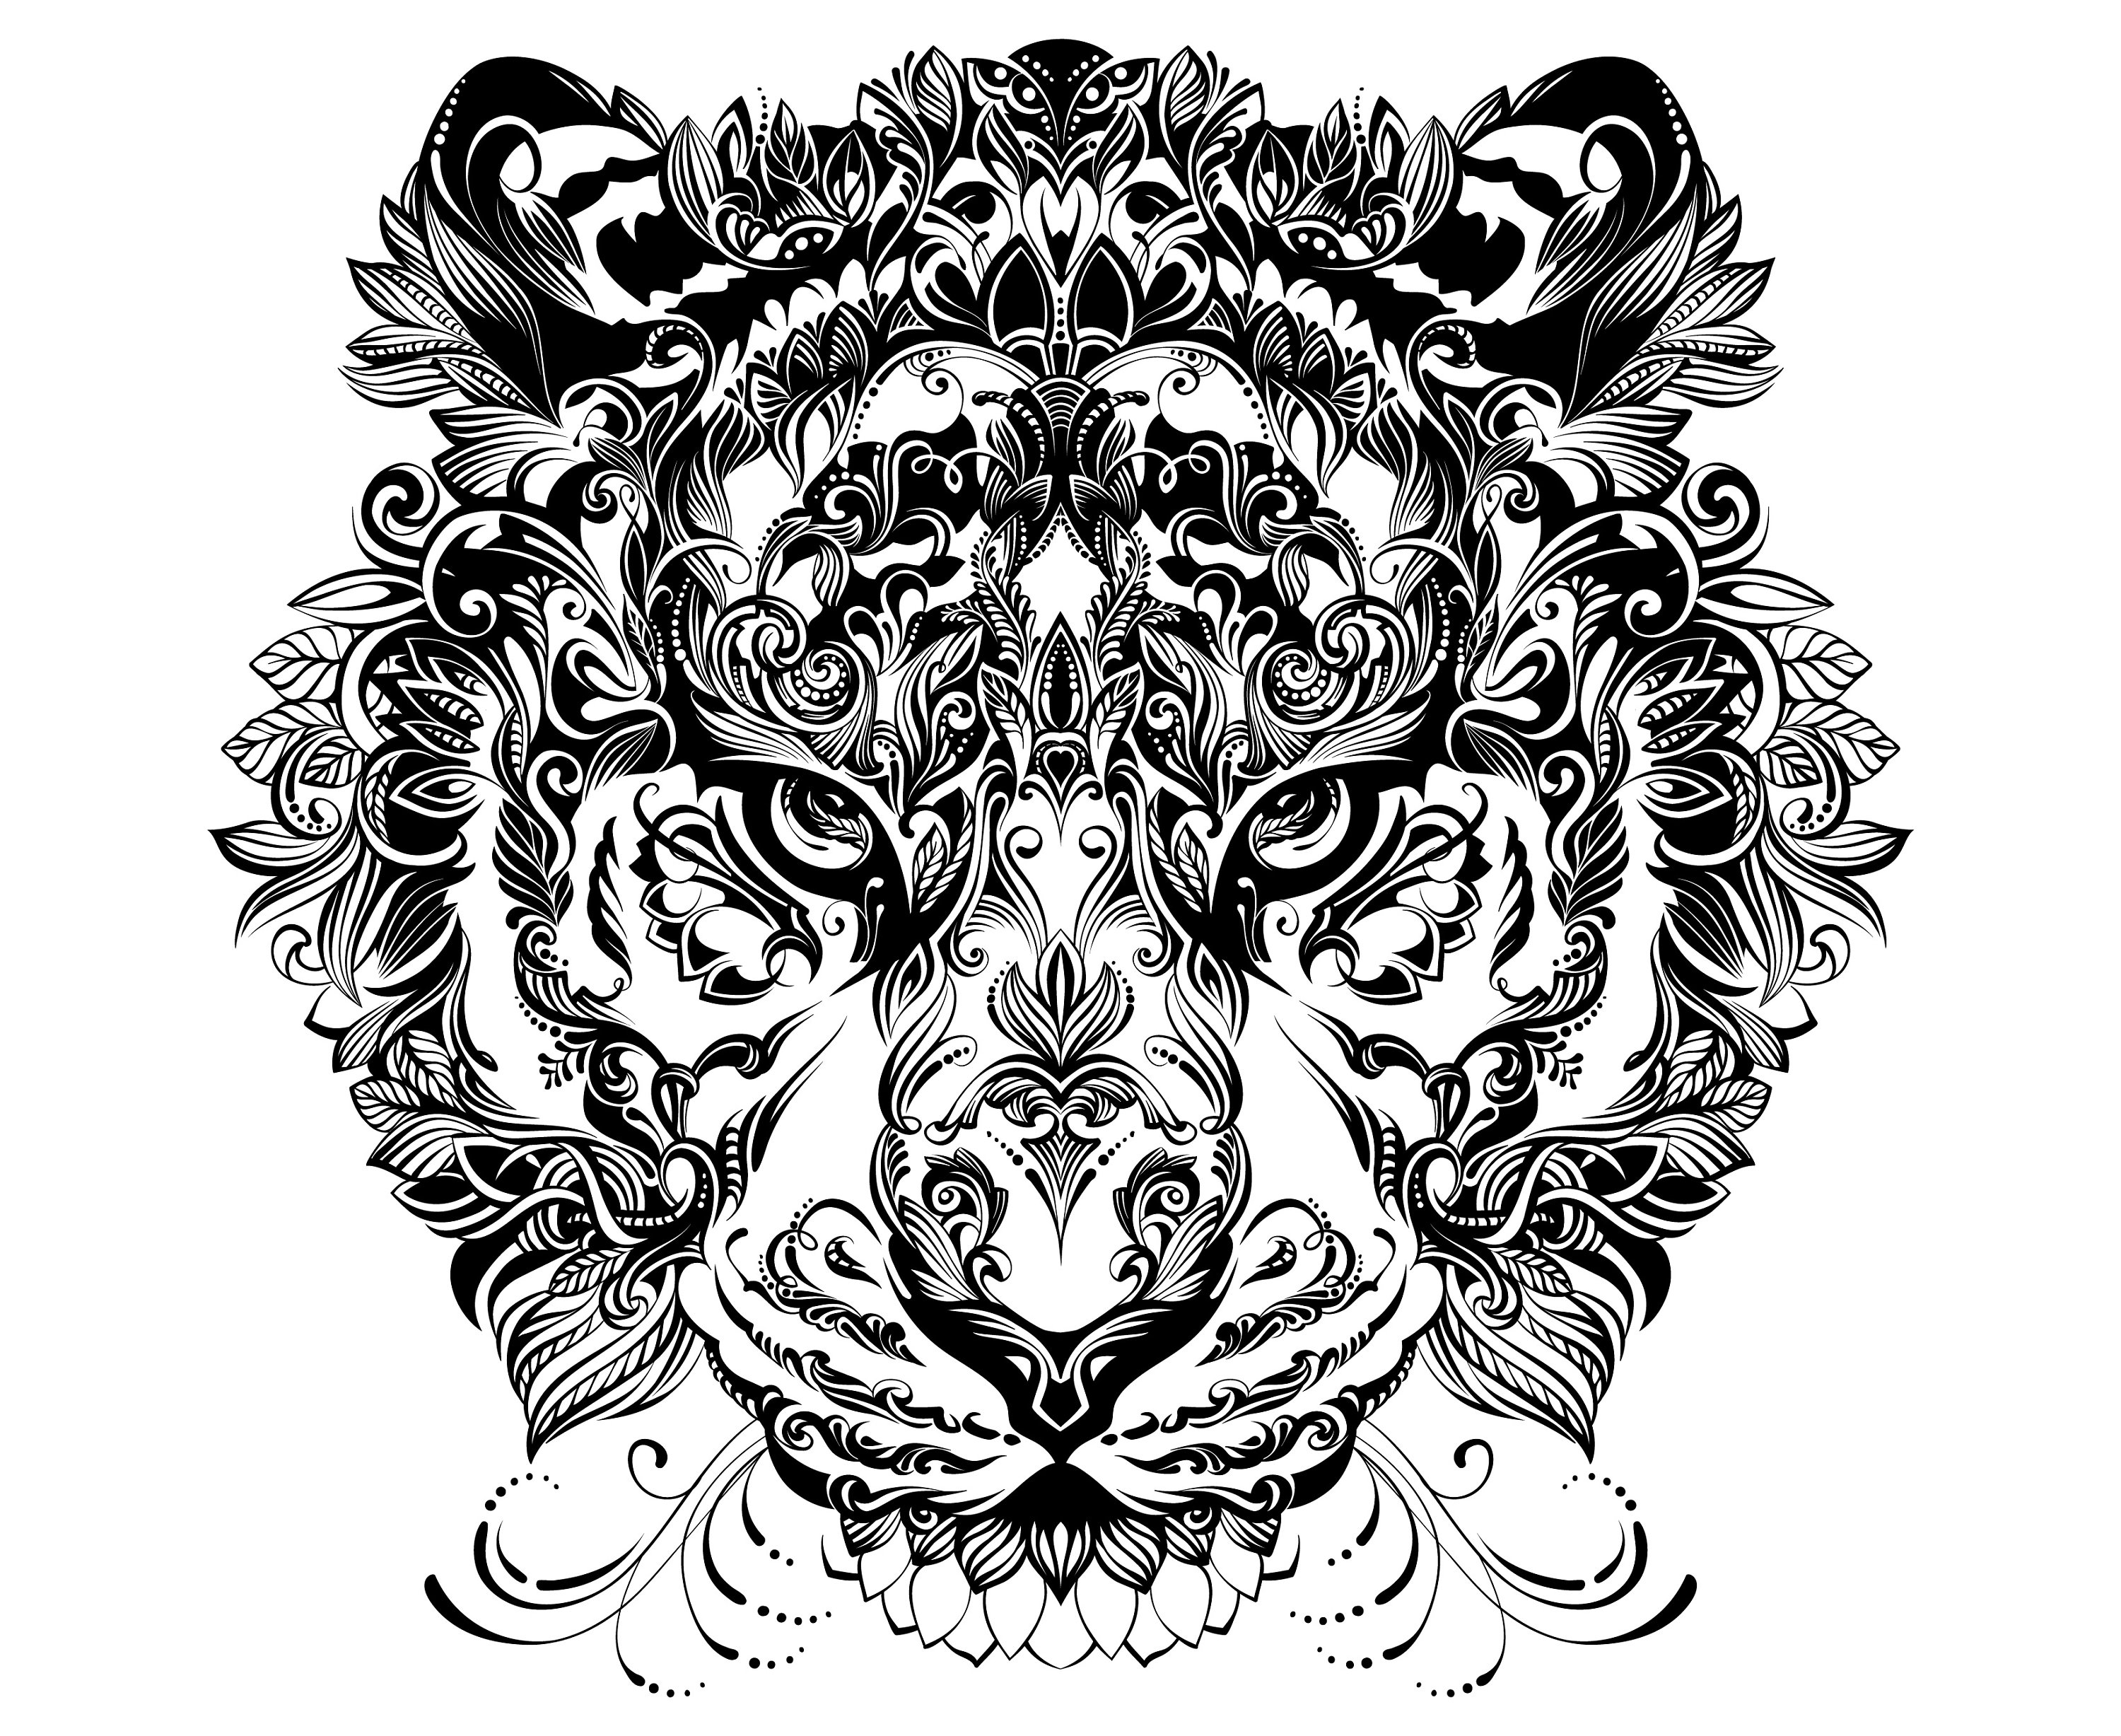 Download Tiger Mandala Zentangle Animal | Etsy